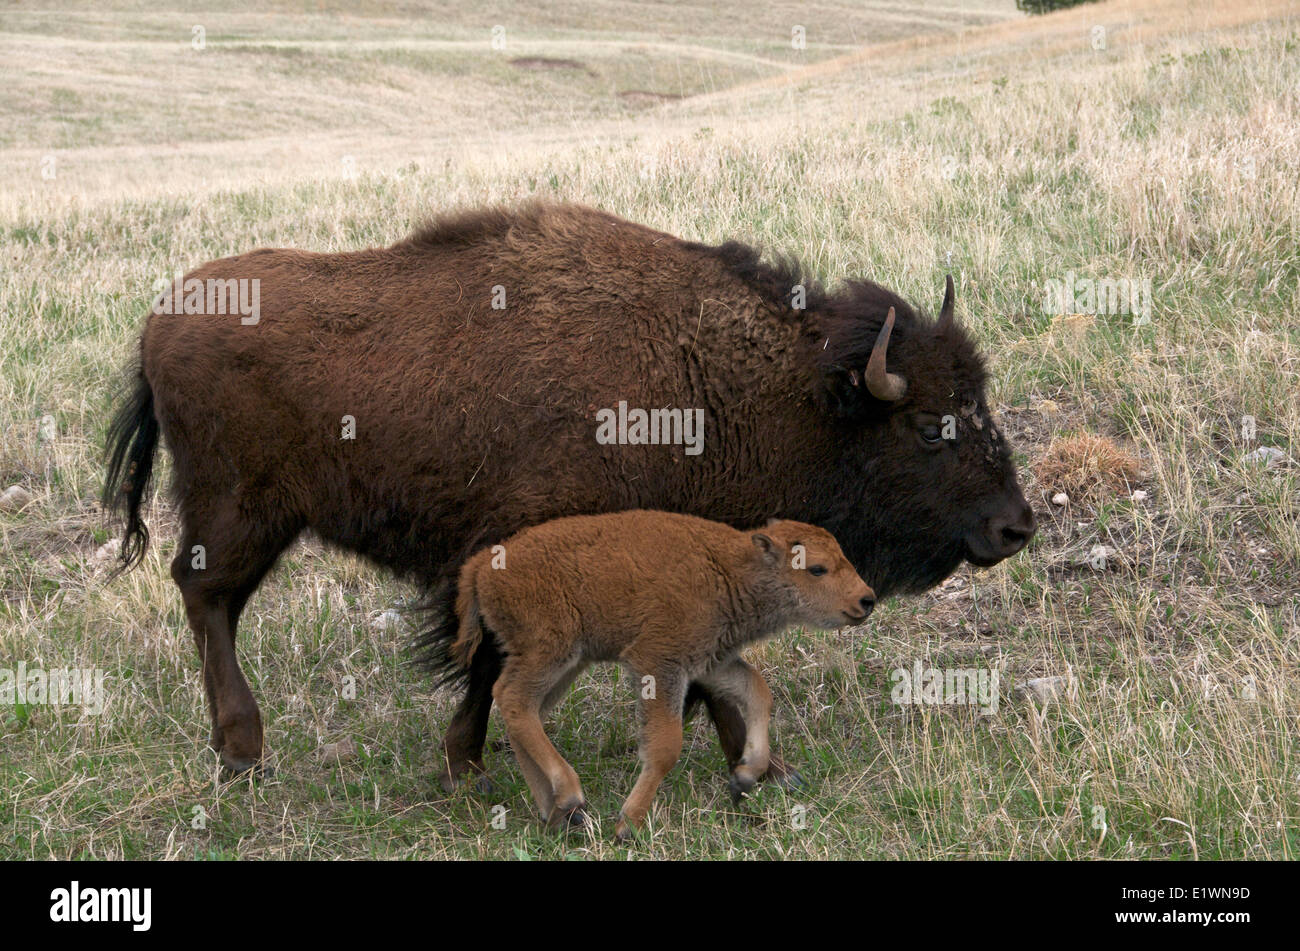 Wild bisonti americani vacca (Bison bison) con un neonato di vitello a molla. Parco nazionale della Grotta del vento, il Dakota del Sud, Stati Uniti d'America. Foto Stock